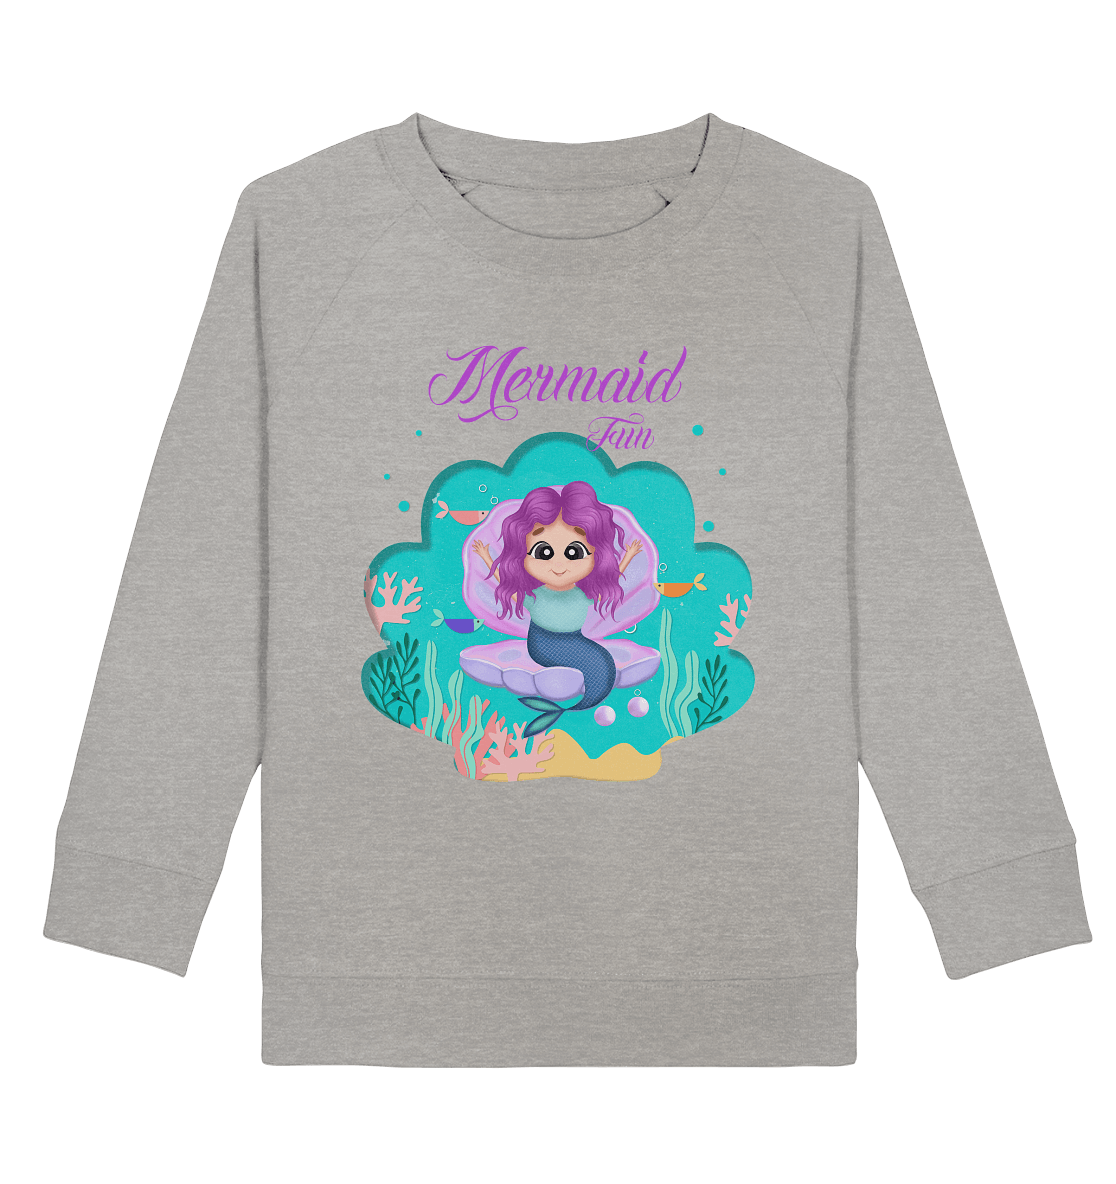 Meerjungfrau Sweatshirt Mermaid Fun meerjungfrau cartoon sweatshirt in grau von bloominic